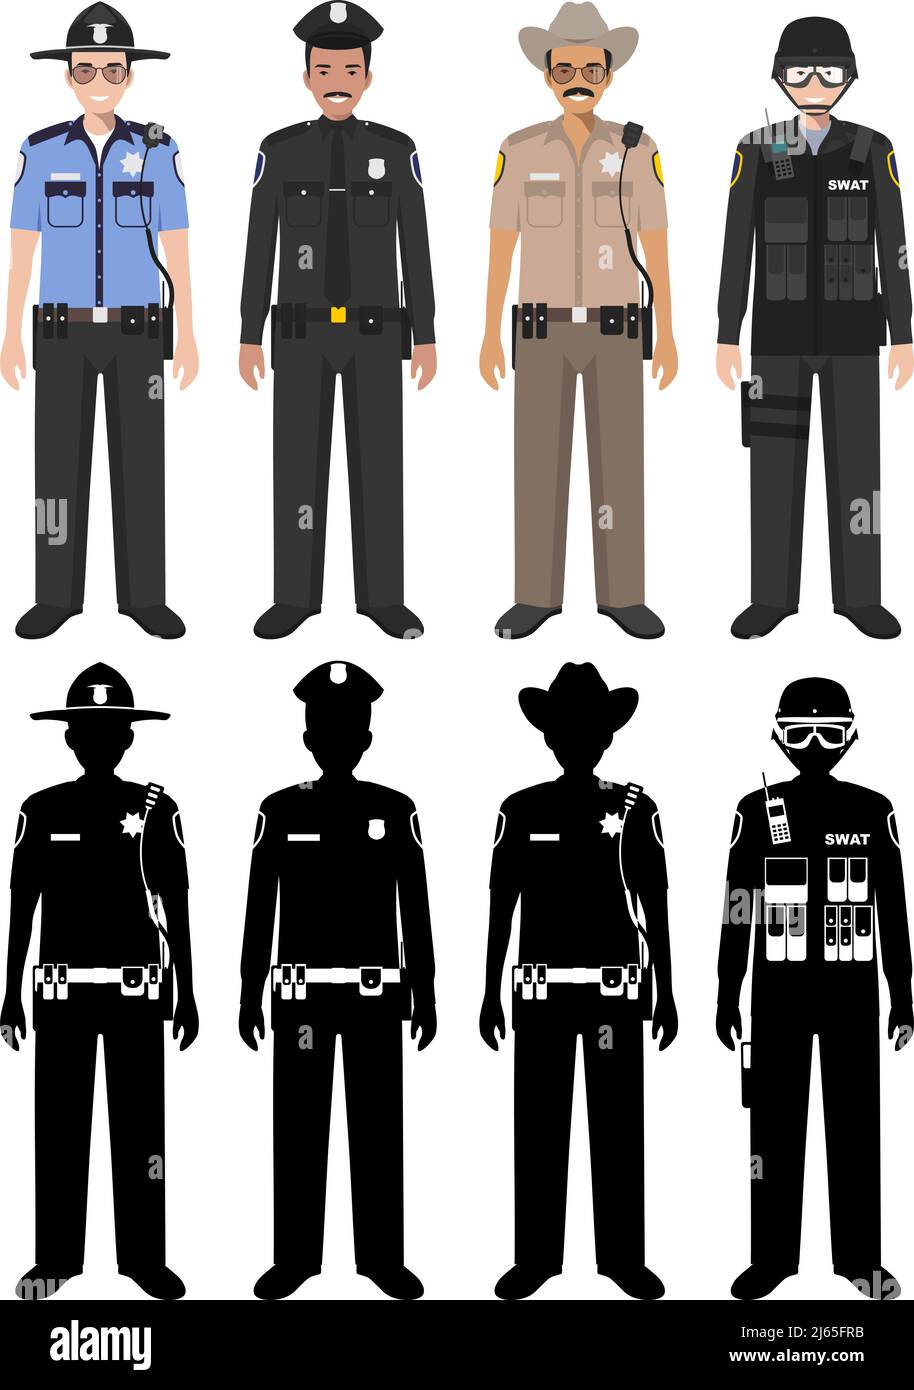 Detaillierte Illustration und Silhouetten von Sheriff, SWAT-Offizier und Polizist in flachem Stil auf weißem Hintergrund. Stock Vektor